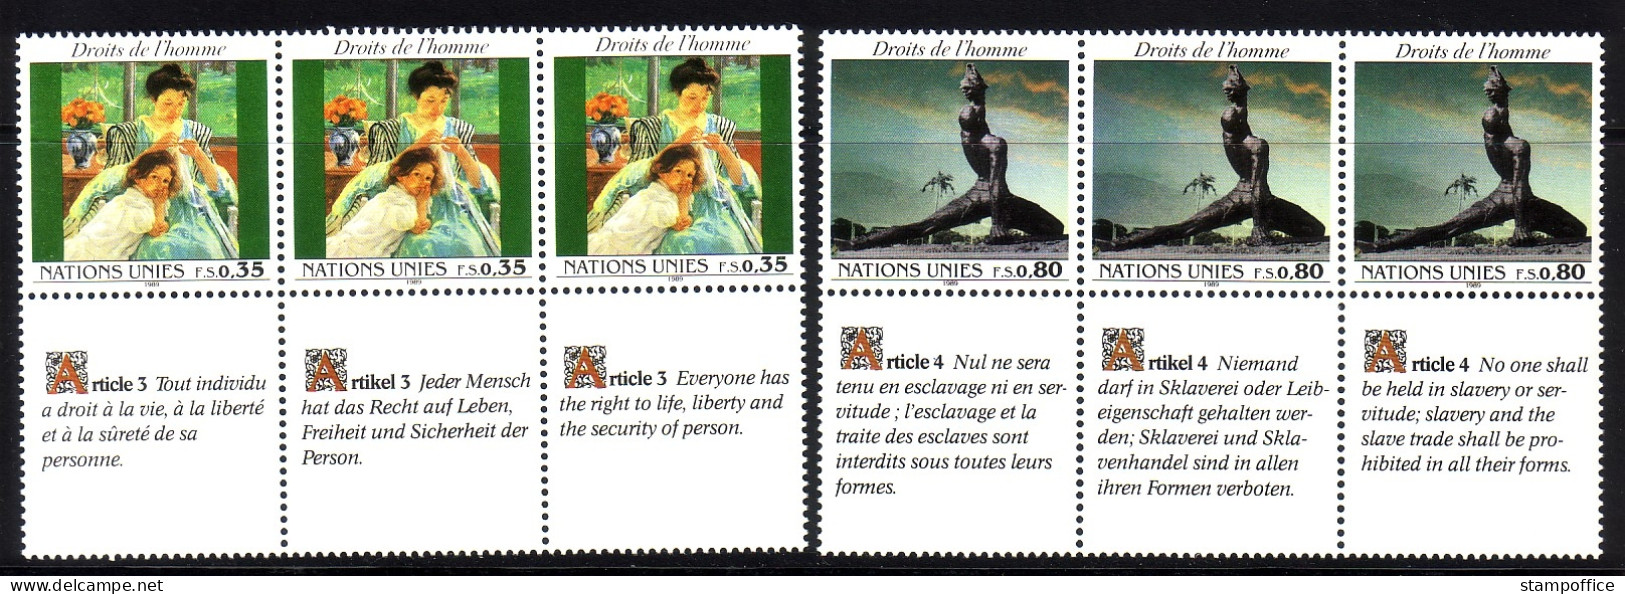 UNO GENF MI-NR. 180-181 POSTFRISCH(MINT) 3er STREIFEN MENSCHENRECHTE 1989 STATUE GEMÄLDE - Unused Stamps